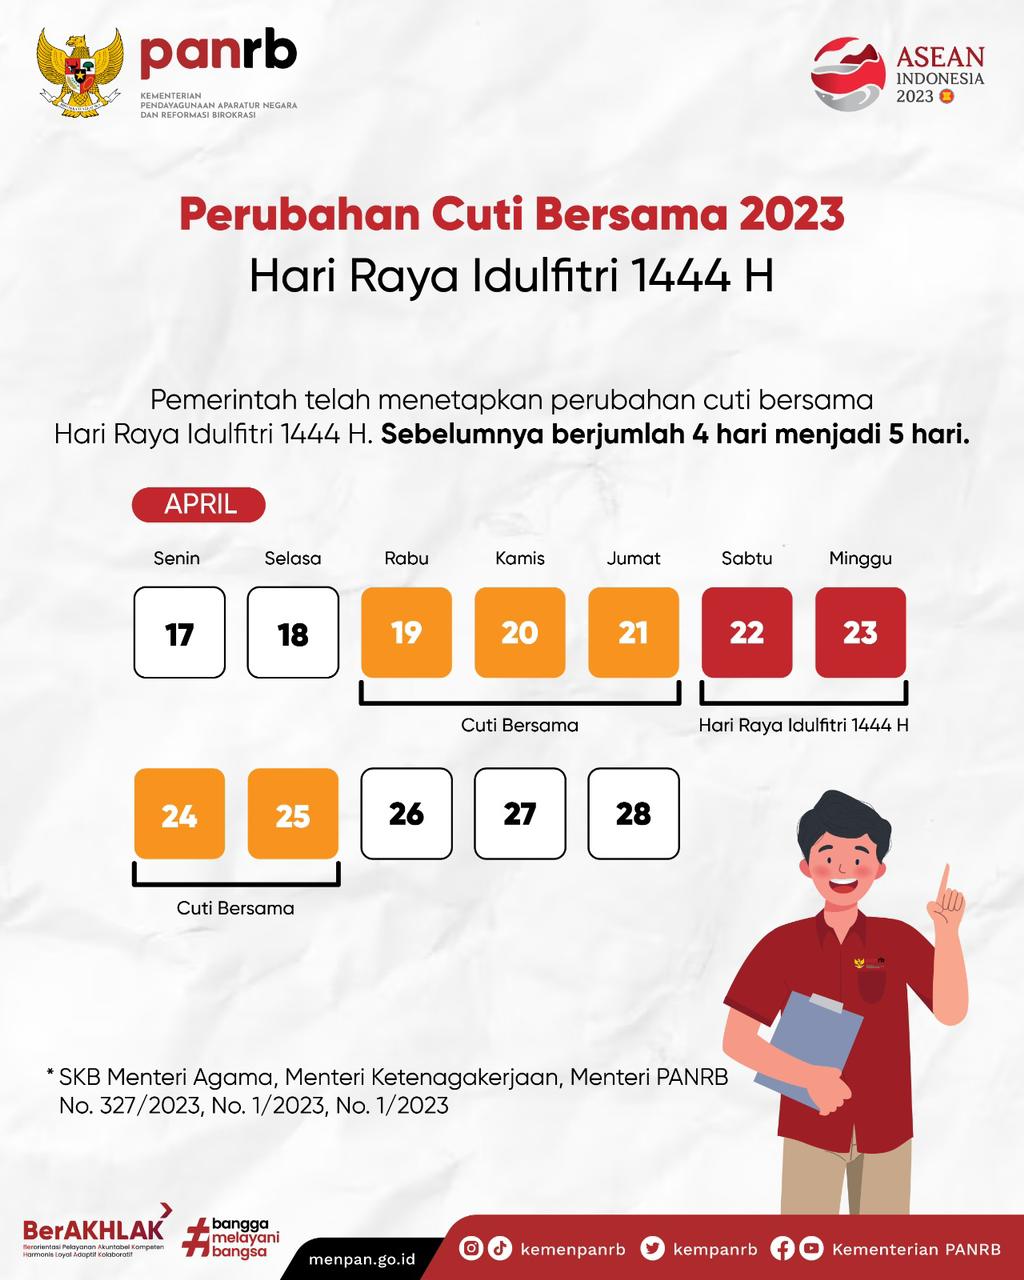 Sah Libur Lebaran Mulai 19 April, Keppres Cuti Bersama 2023 Diterbitkan Jokowi